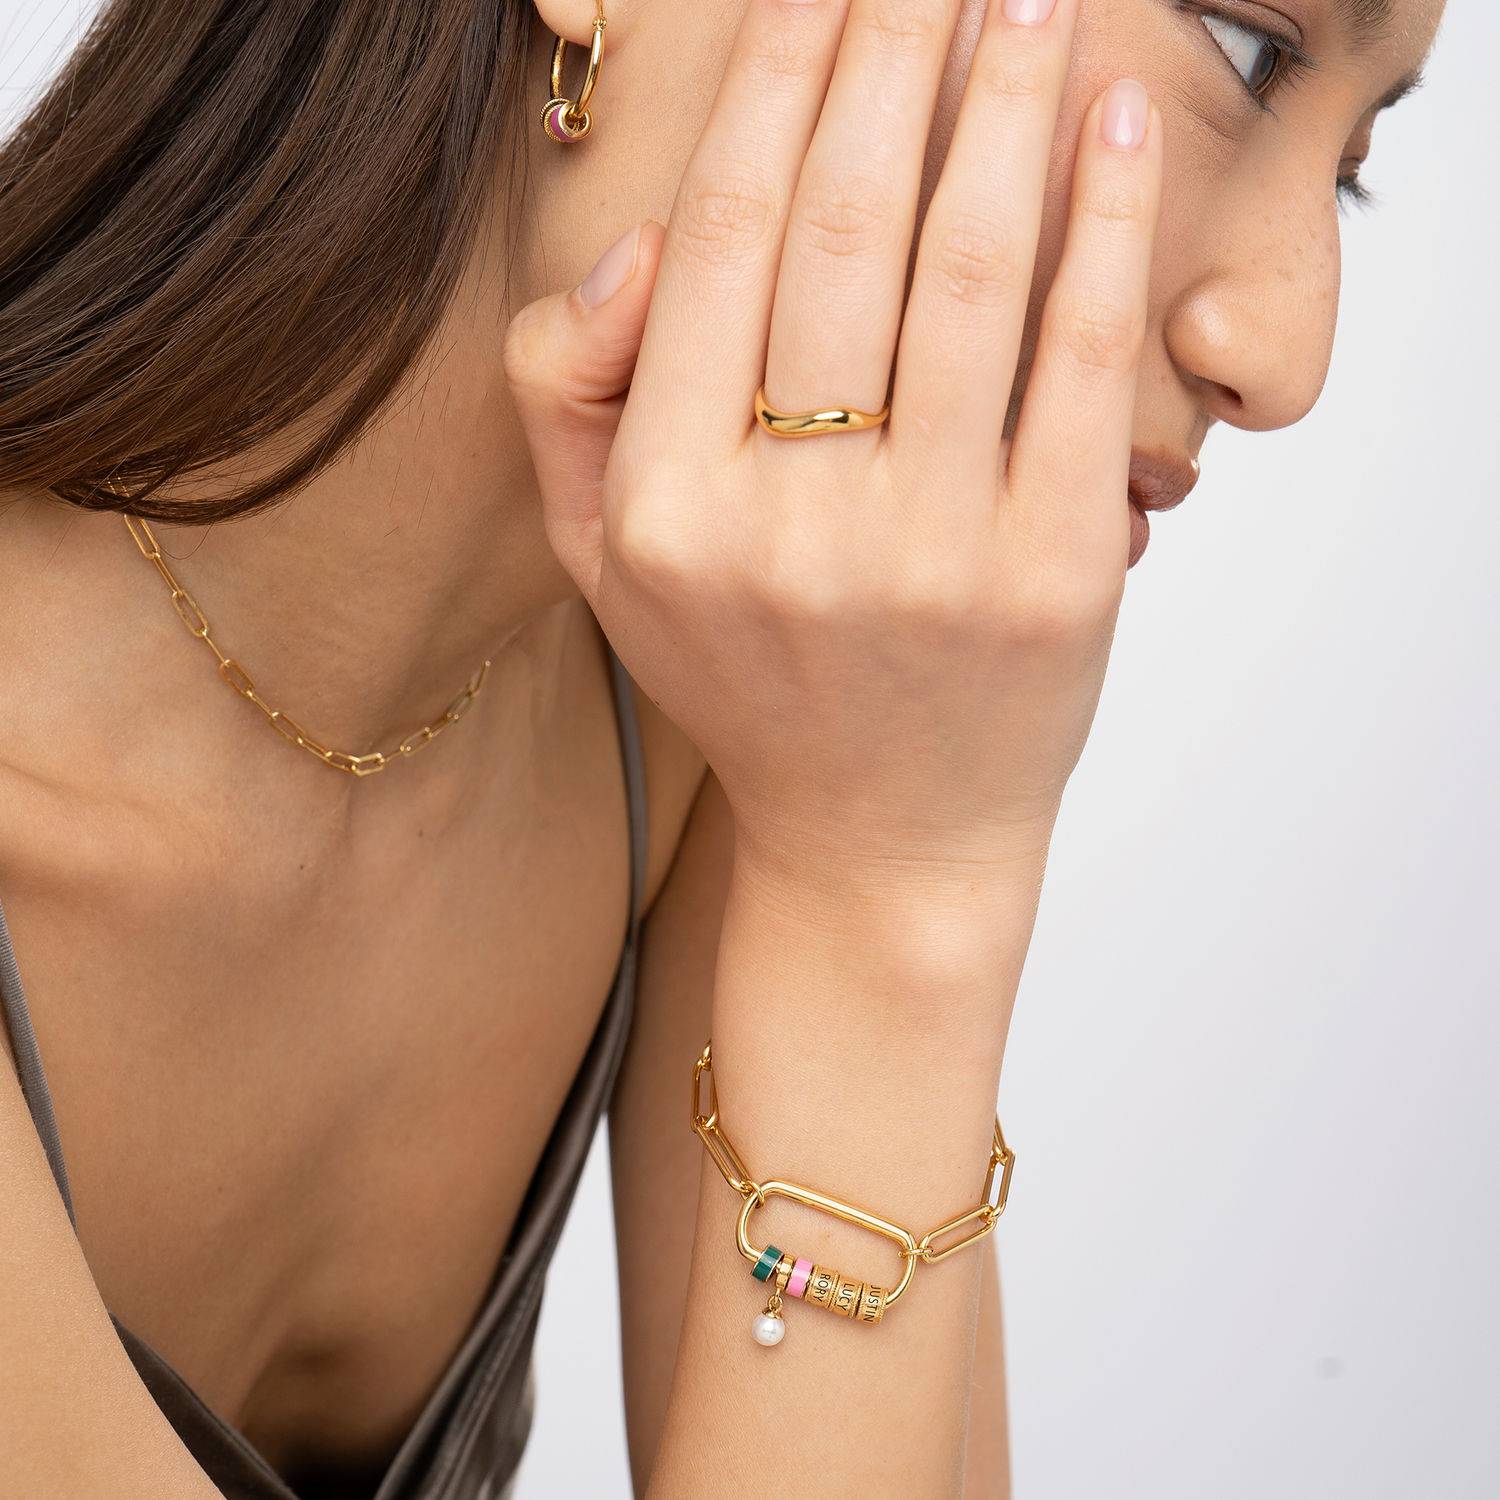 Linda Armband mit ovalem Verschluss und Perle - 750er Gold-Vermeil-1 Produktfoto